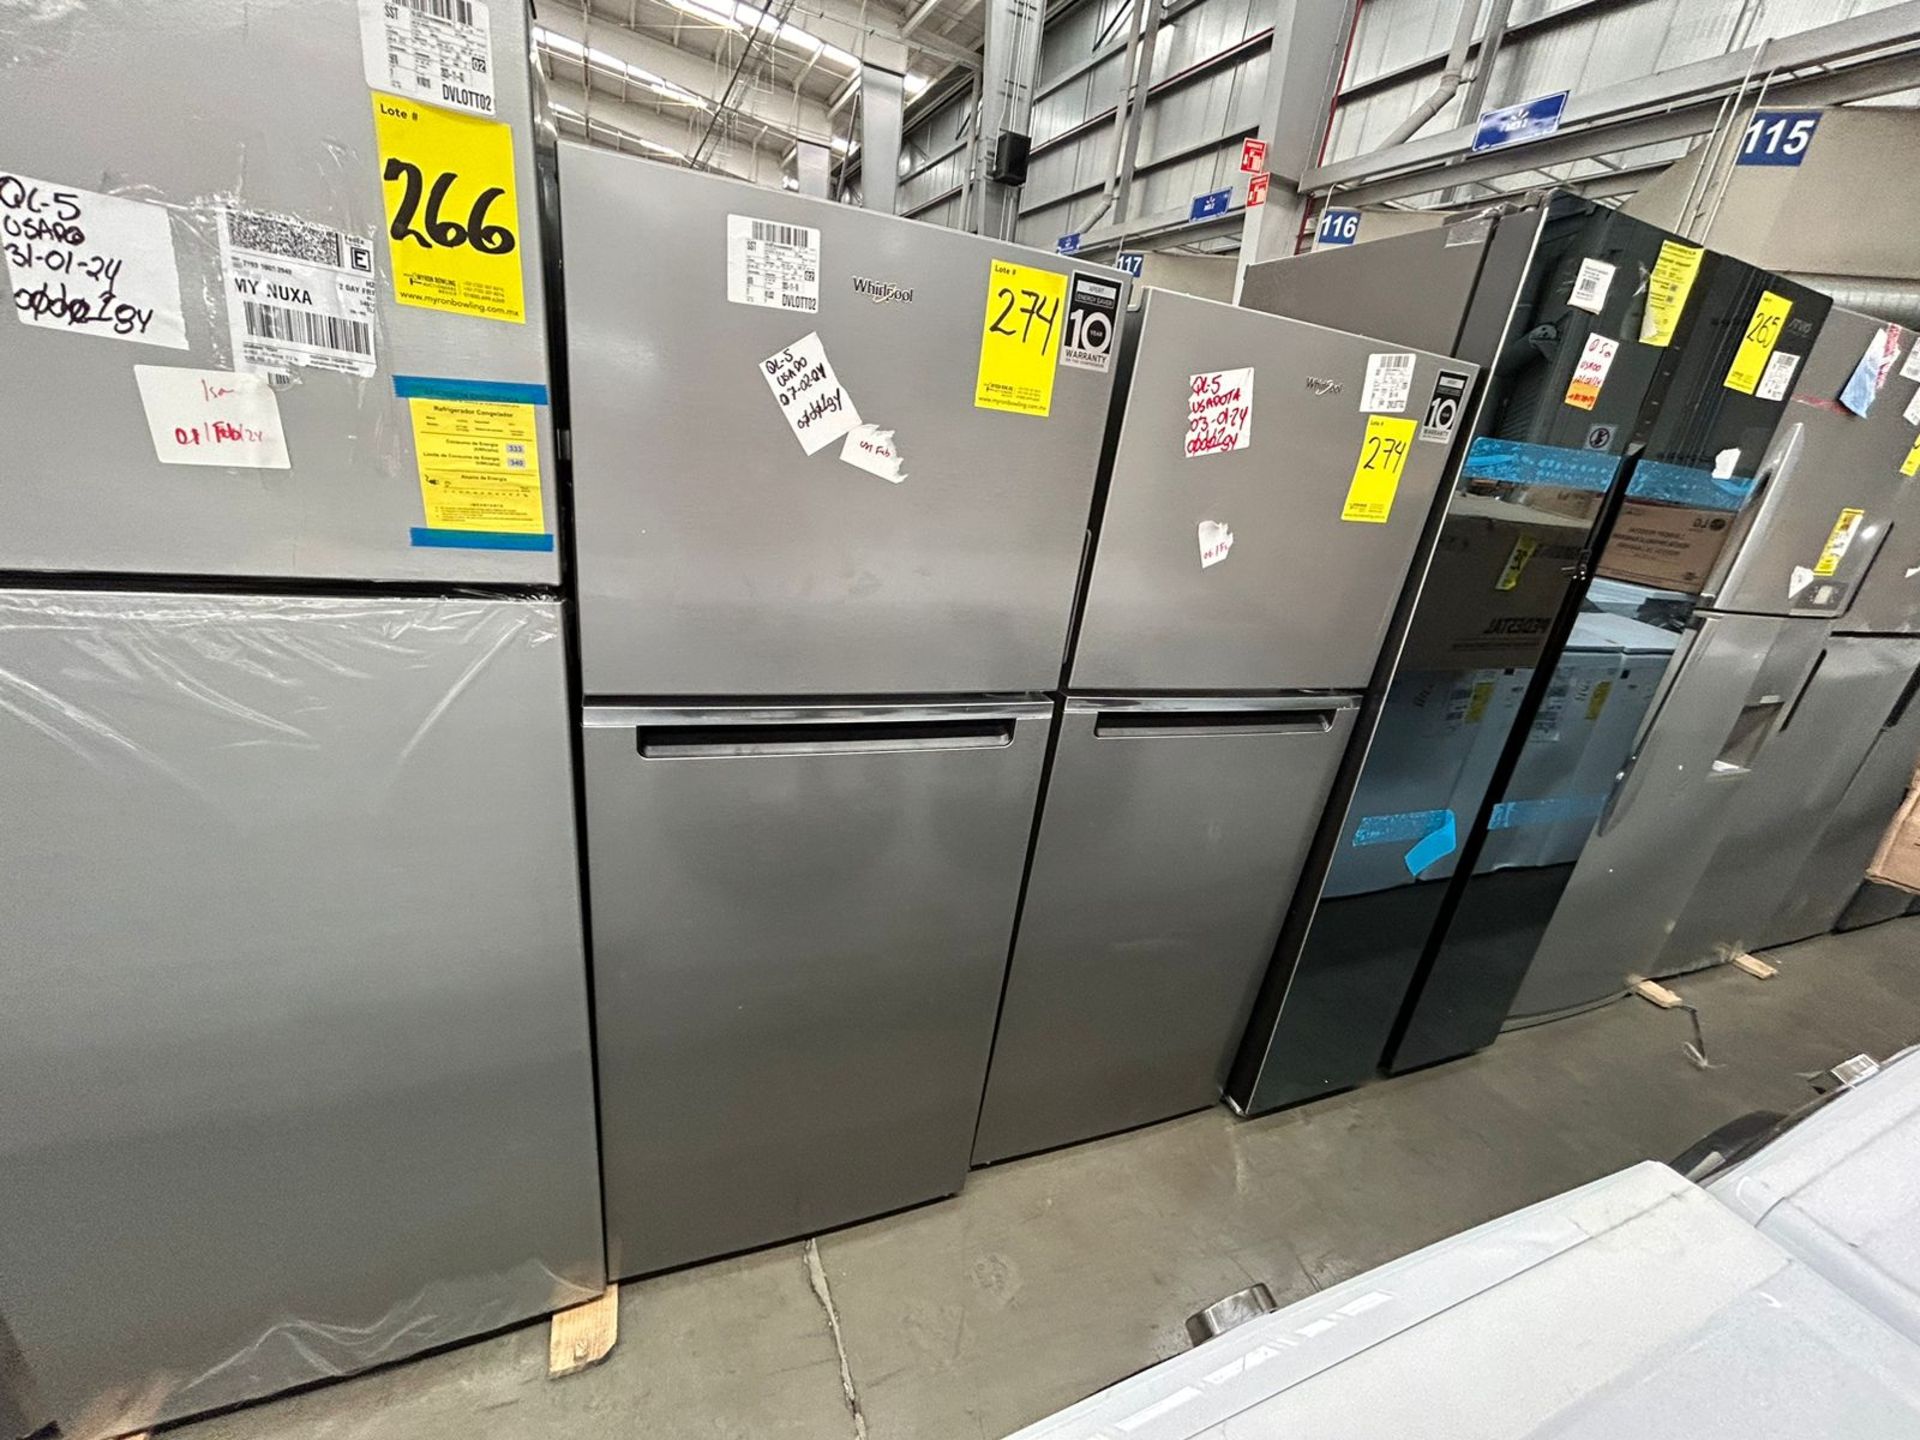 Lote de 2 Refrigeradores, contiene: 1 Refrigerador Marca WHIRLPOOL, Modelo WT1230K04, Serie 842648, - Image 3 of 5